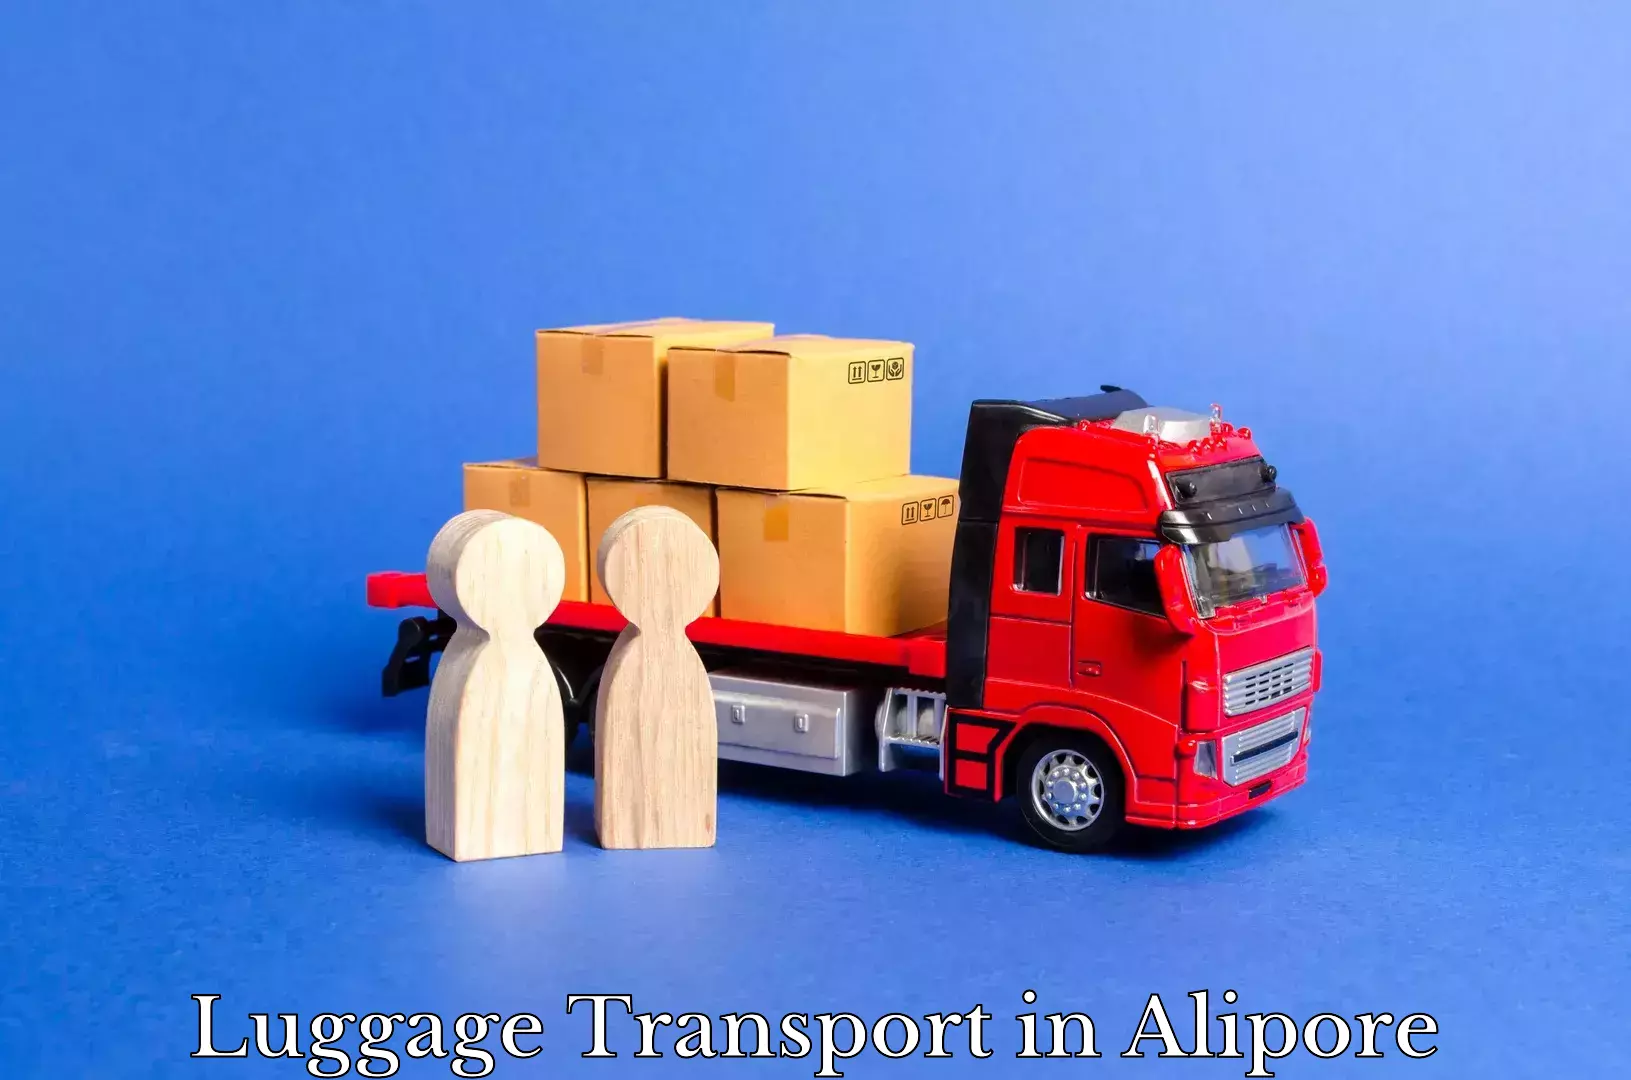 Urban luggage shipping in Alipore